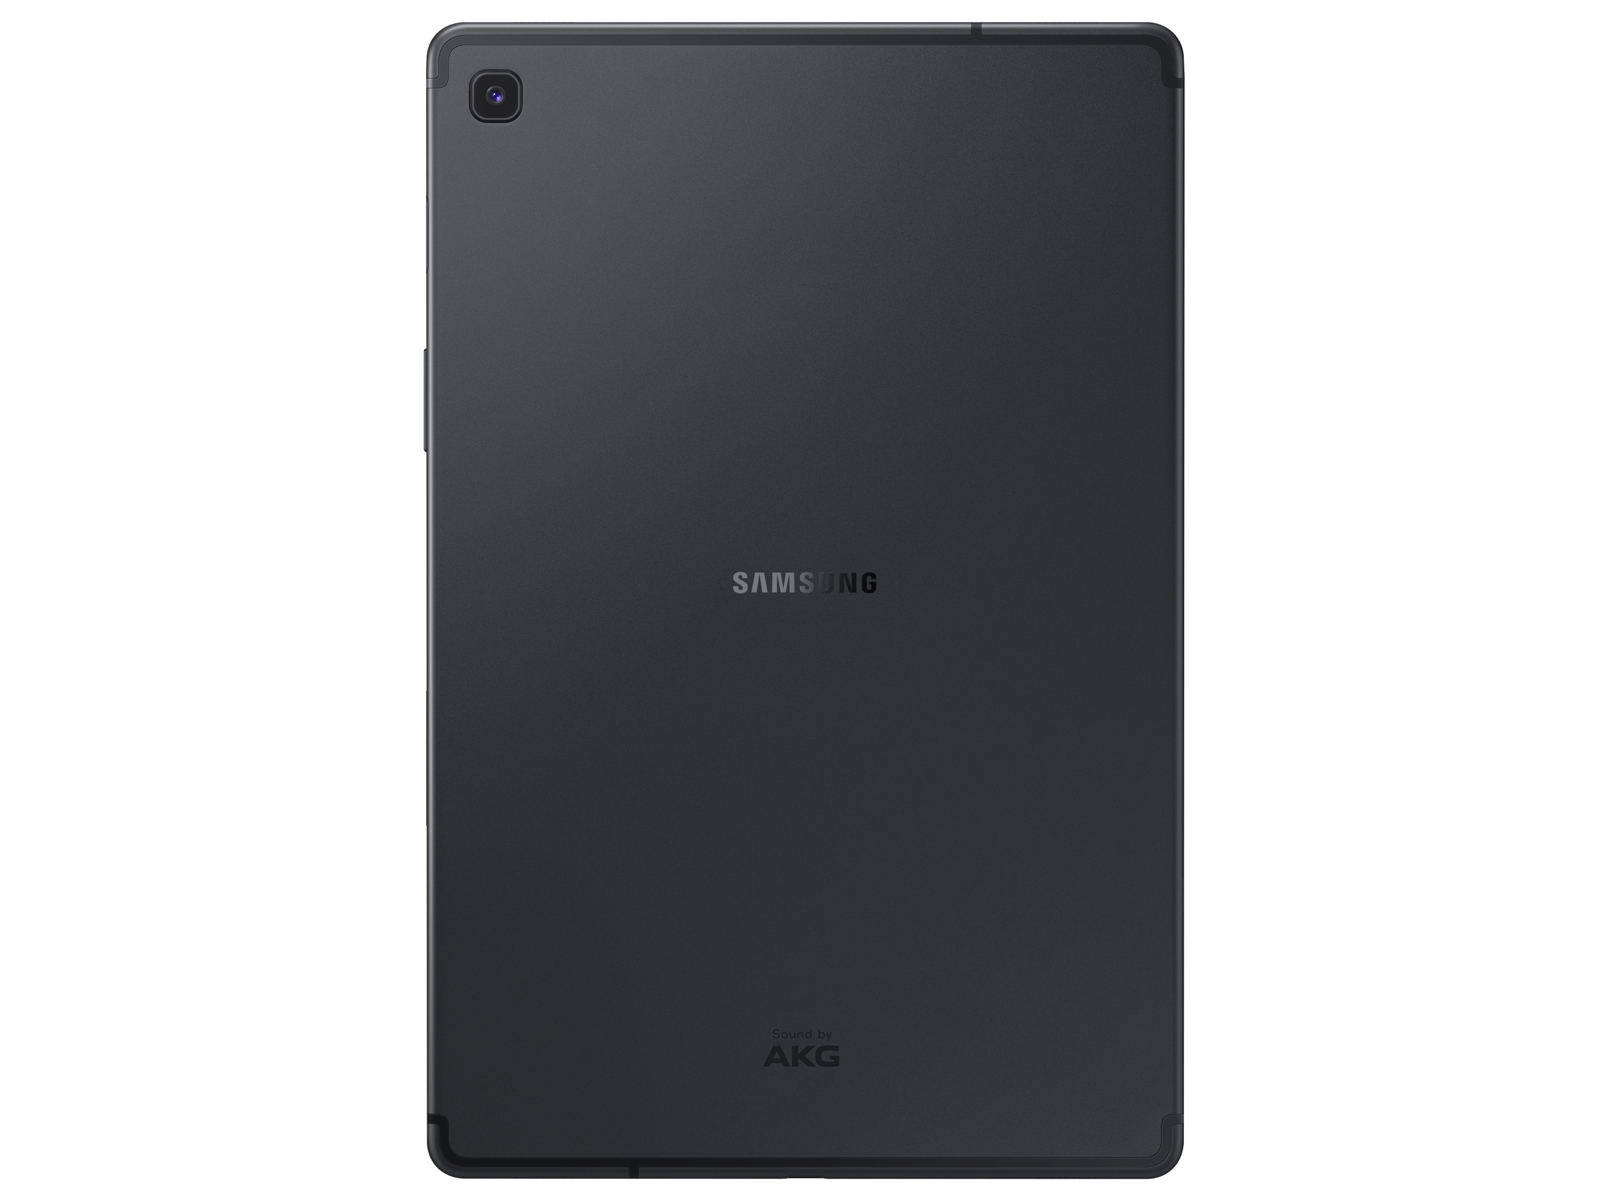 Galaxy Tab S5e 10.5, 64GB, Black (Wi-Fi) Tablets - SM-T720NZKAXAR